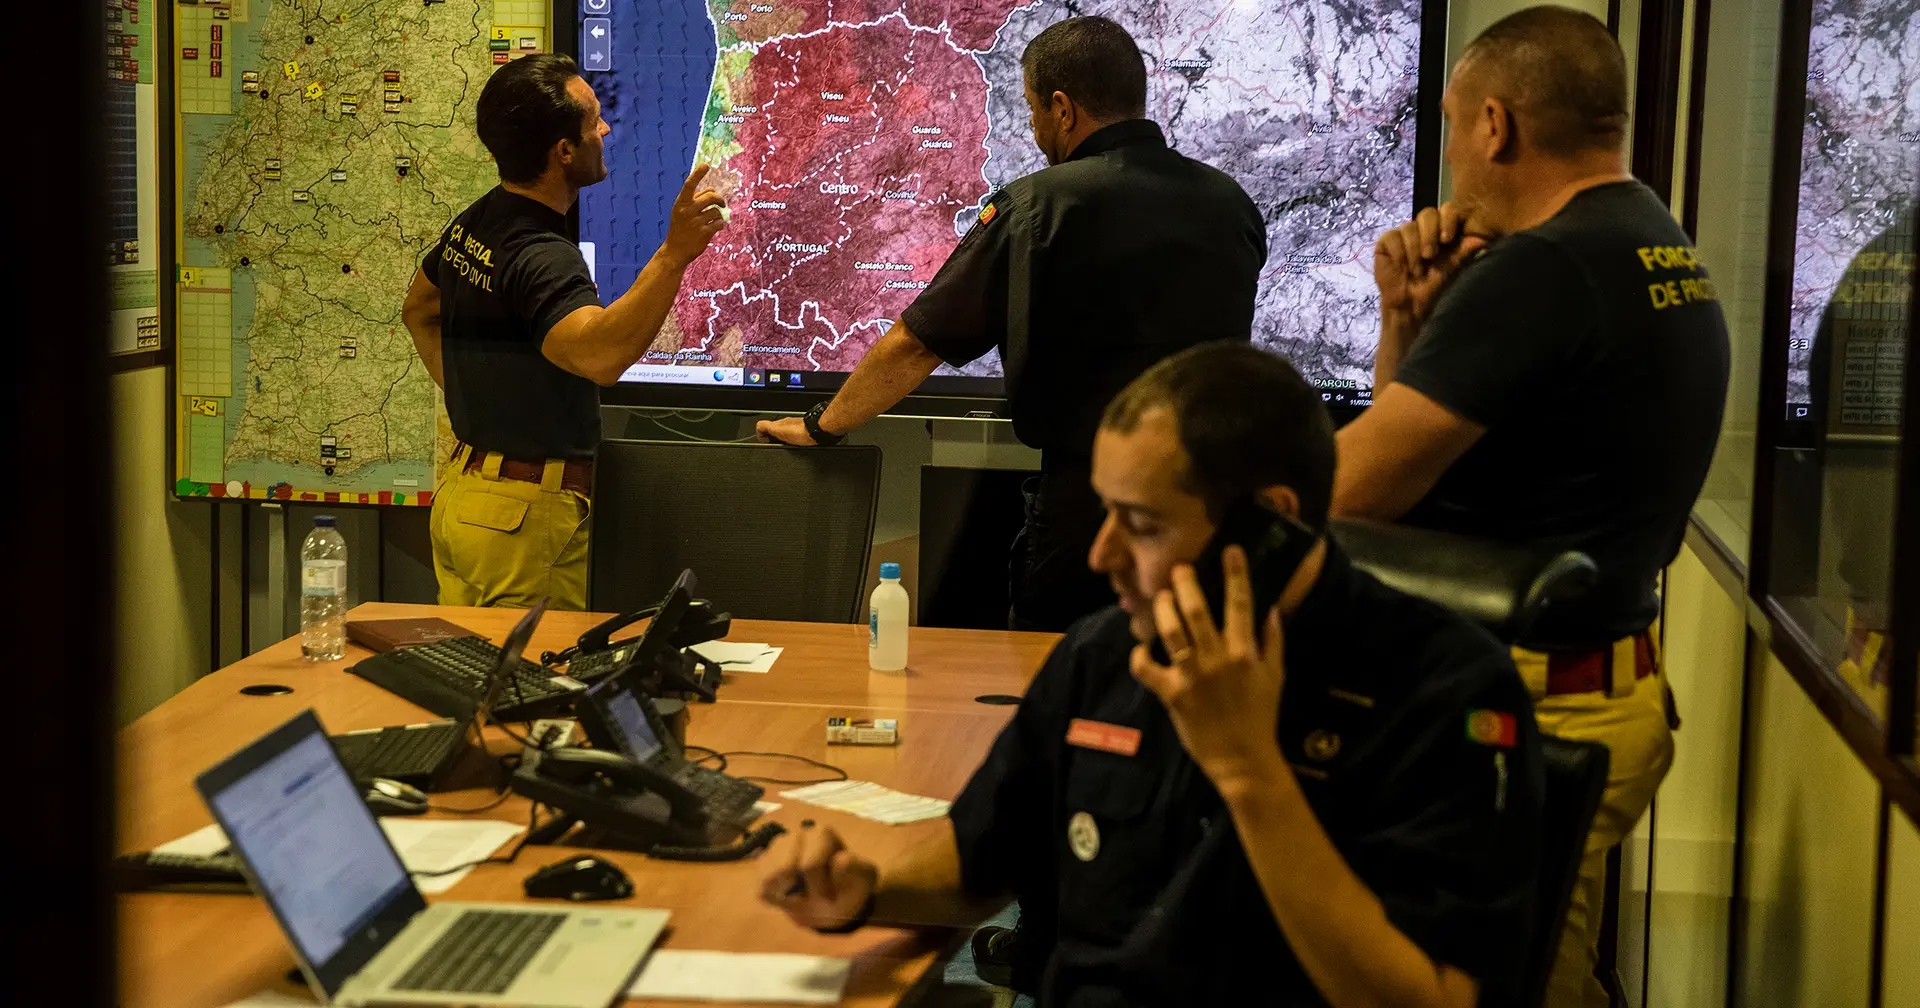 “Aprendemos com os incêndios”: reportagem no núcleo da Proteção Civil que vê, prevê, vigia e coordena o combate ao fogo que arde em Portugal